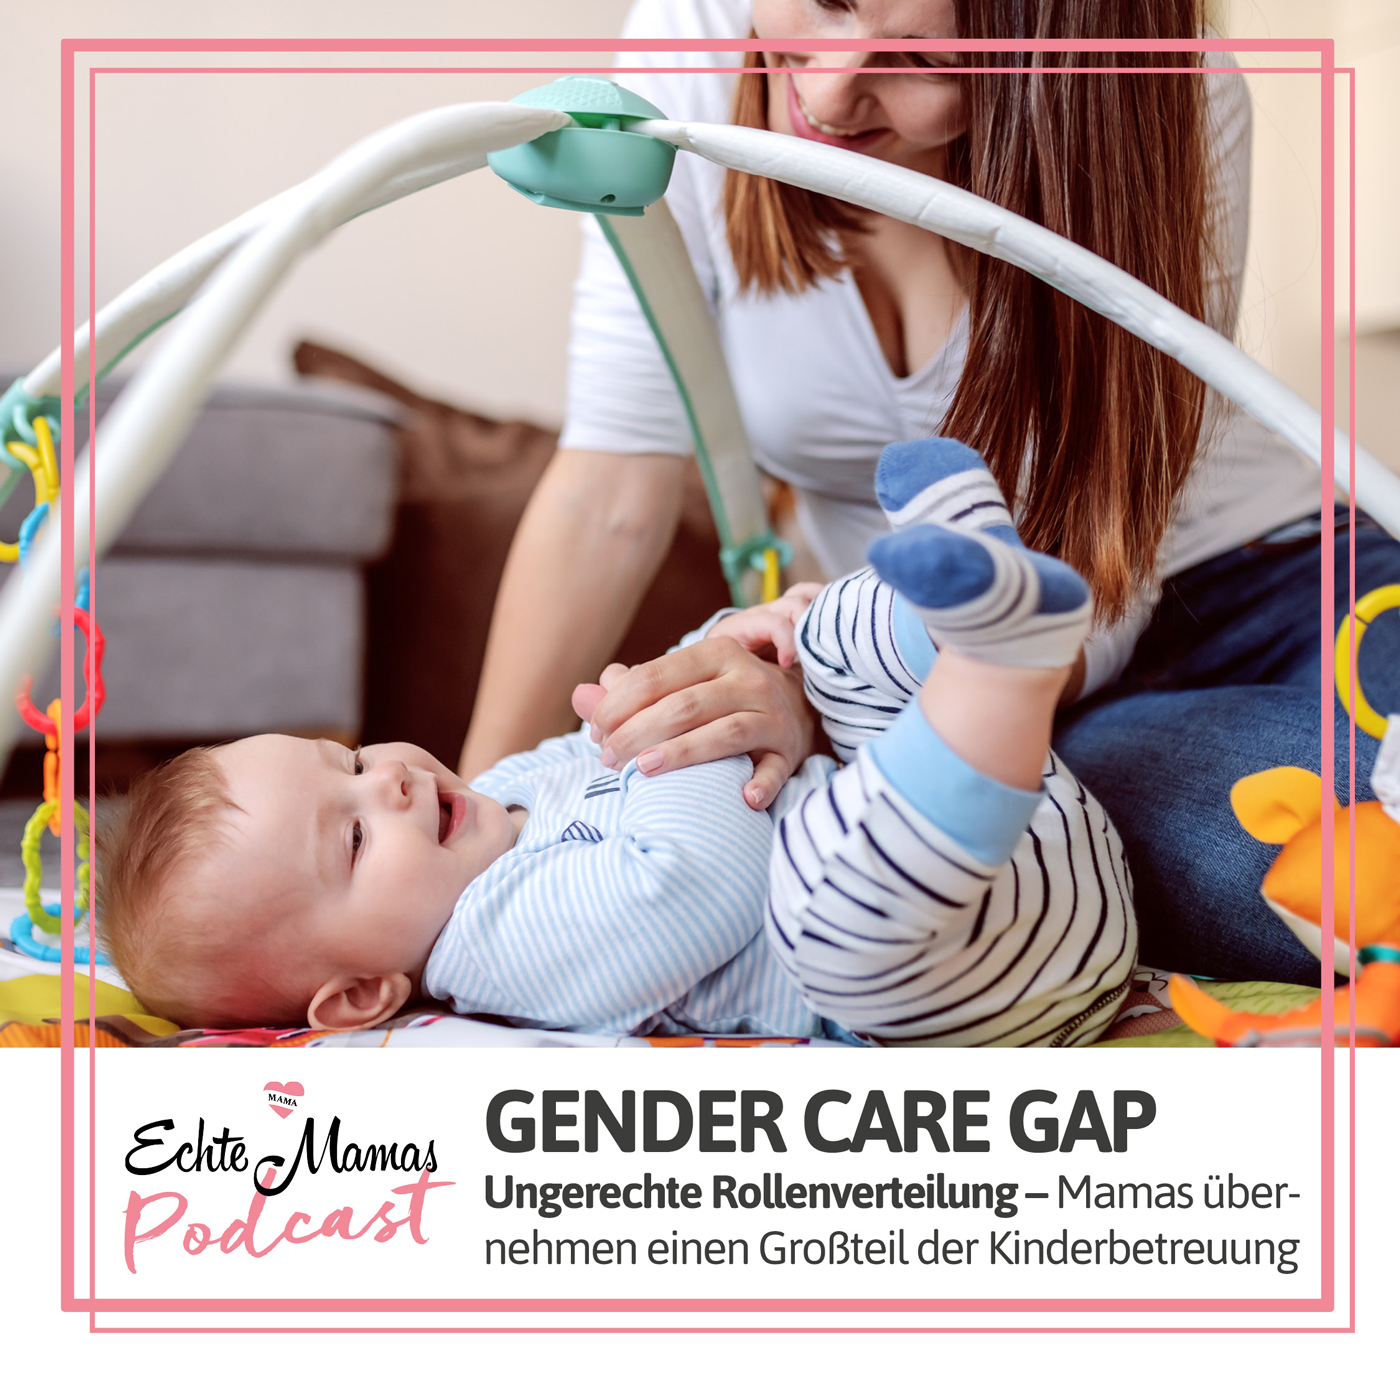 Gender Care Gap: Ungerechte Rollenverteilung – Mamas übernehmen einen Großteil der Kinderbetreuung